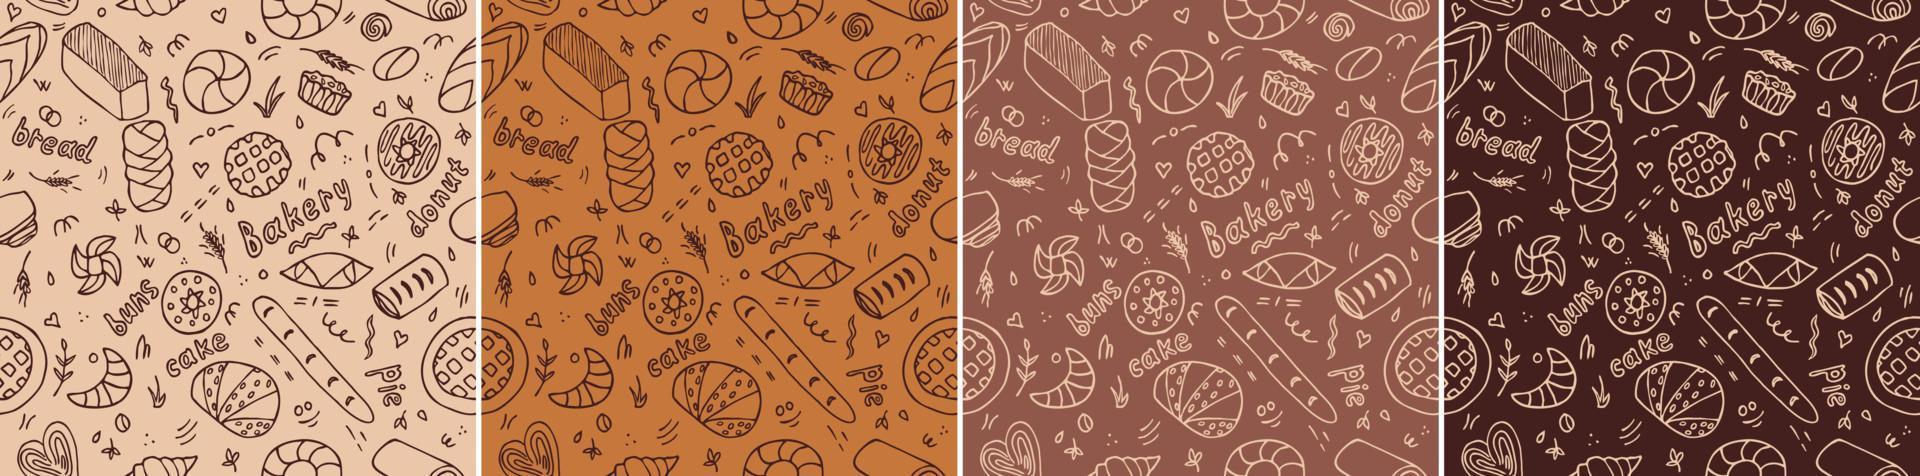 bakkerij doodle patroon set vector